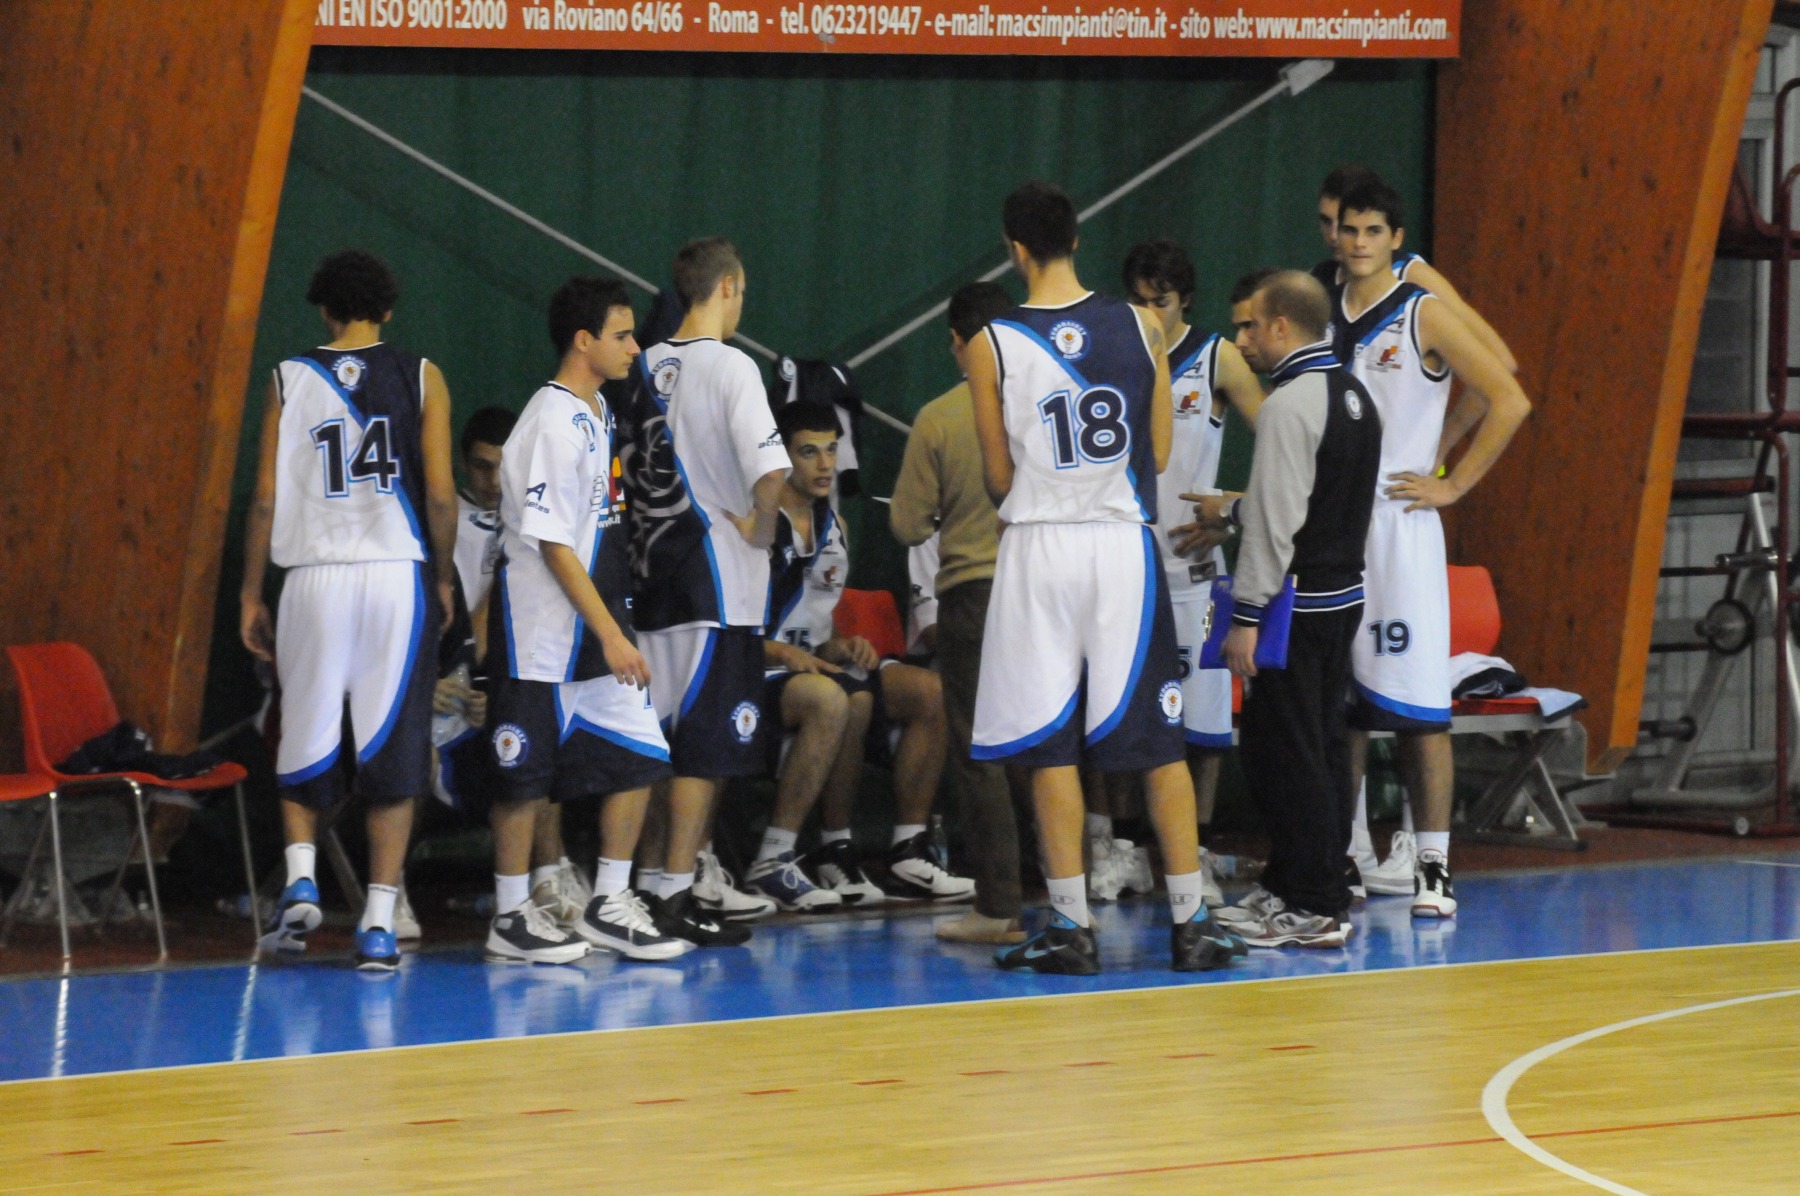 2010-12-22-U19Ecc-Eurobasket-SMG-001